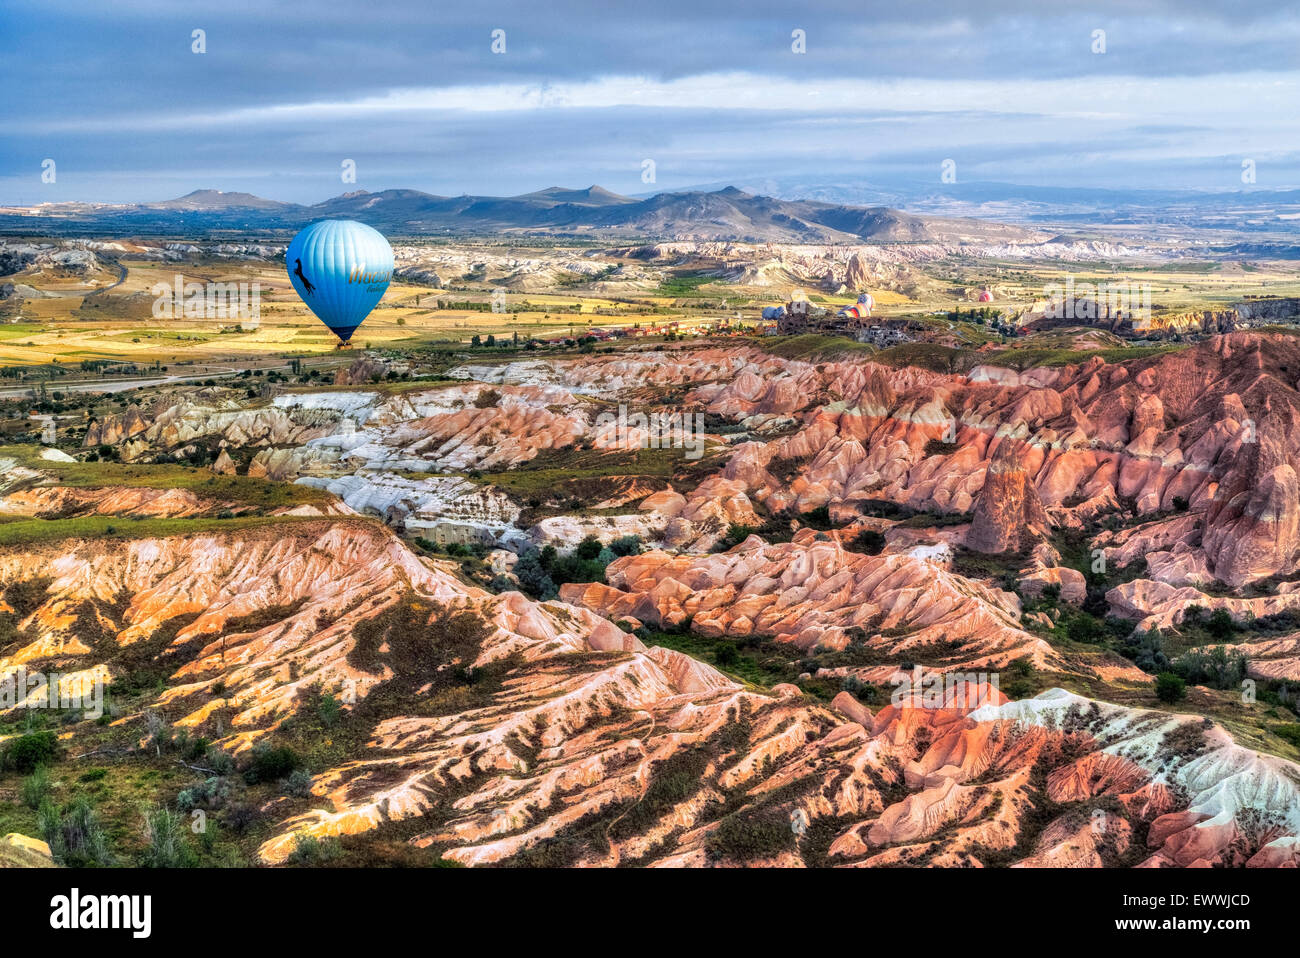 hot air balloon in Cappadocia, Anatolia, Turkey Stock Photo